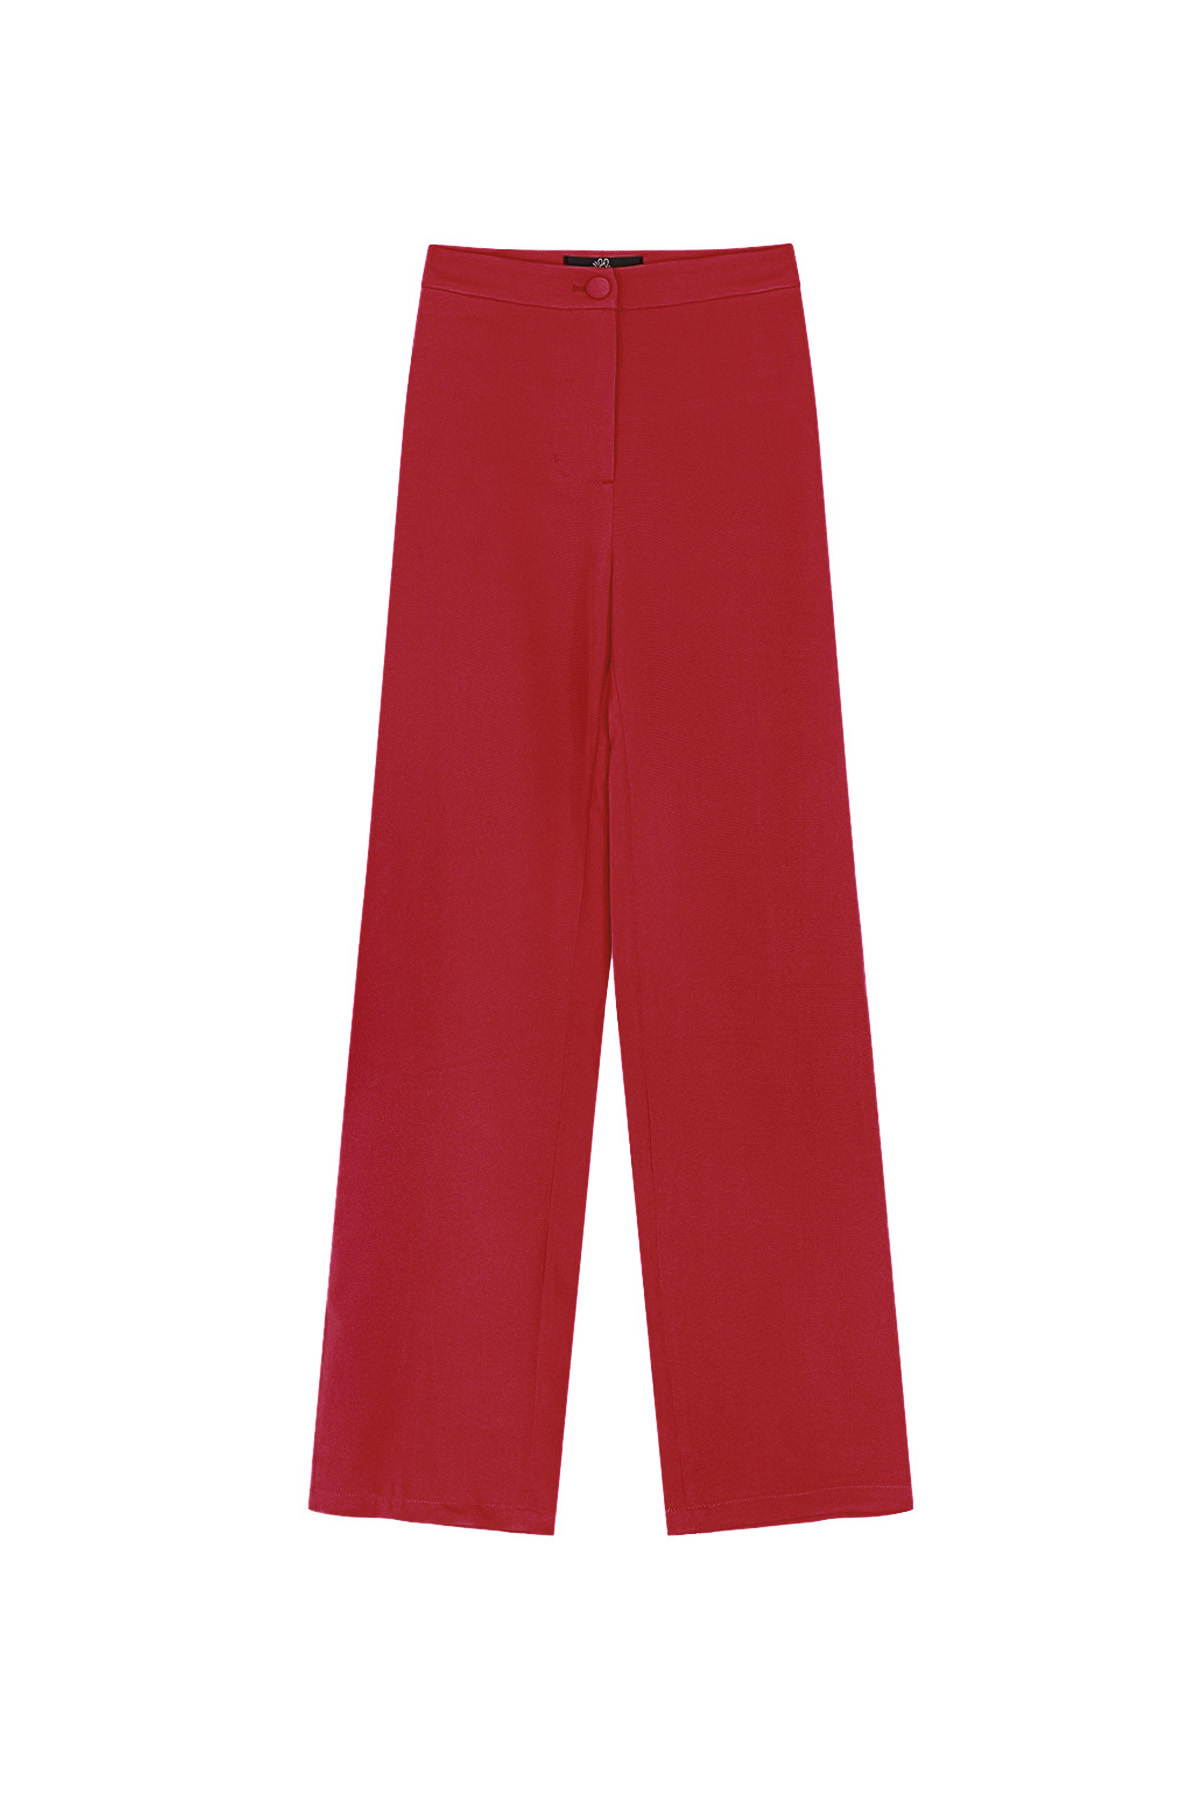 Pantalon basique uni - rouge